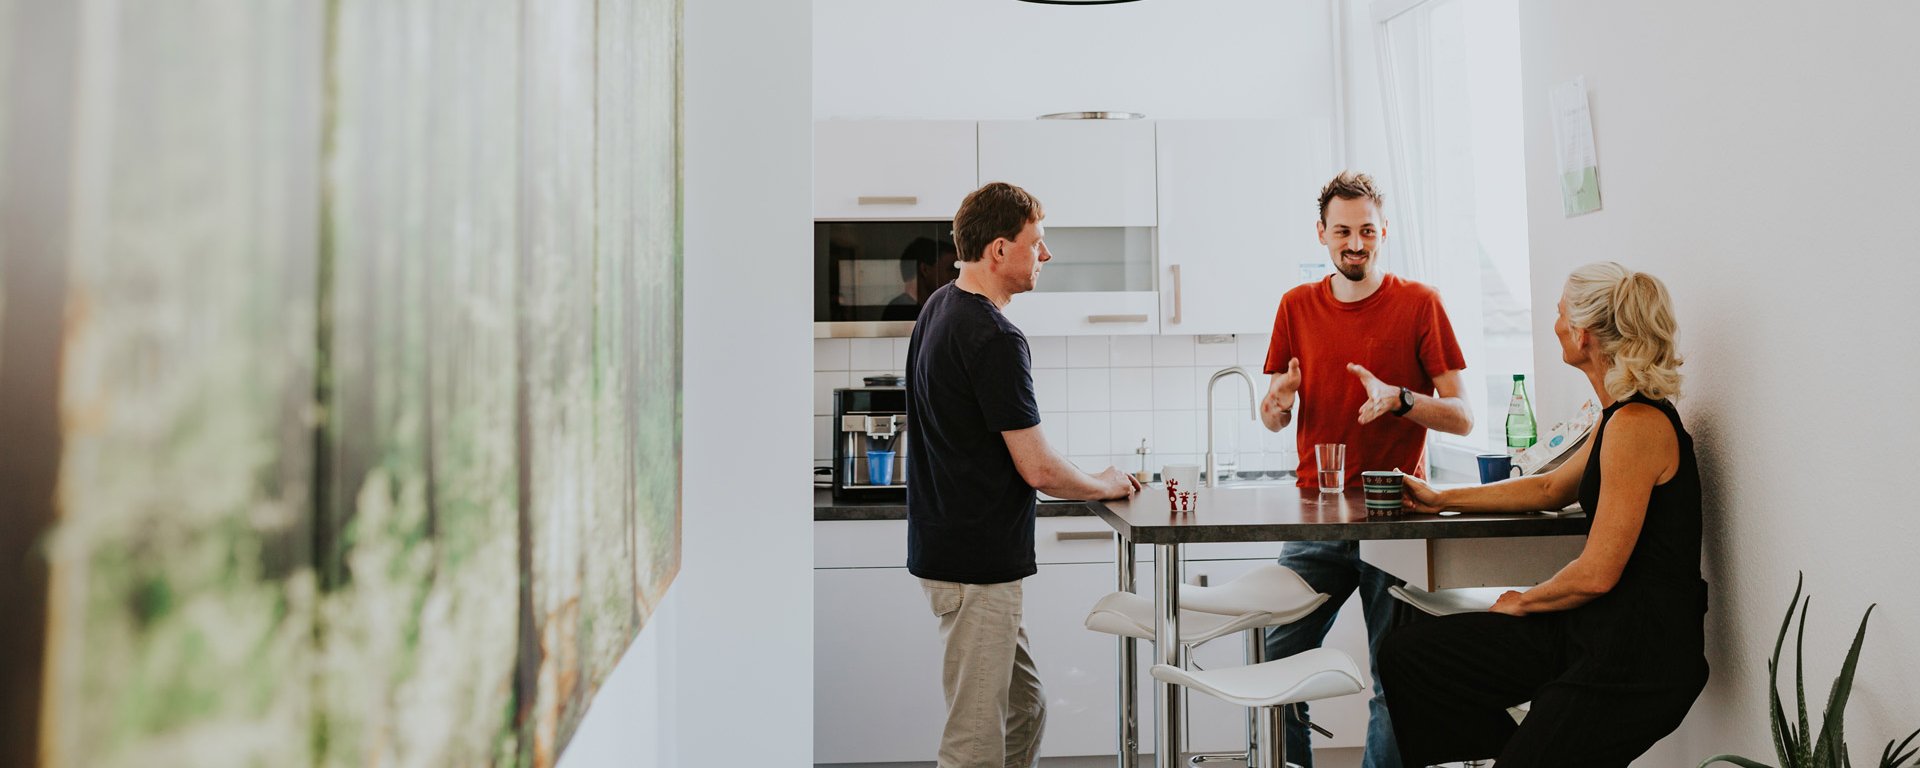 Gespräch in Küche bei Smart Web Elements